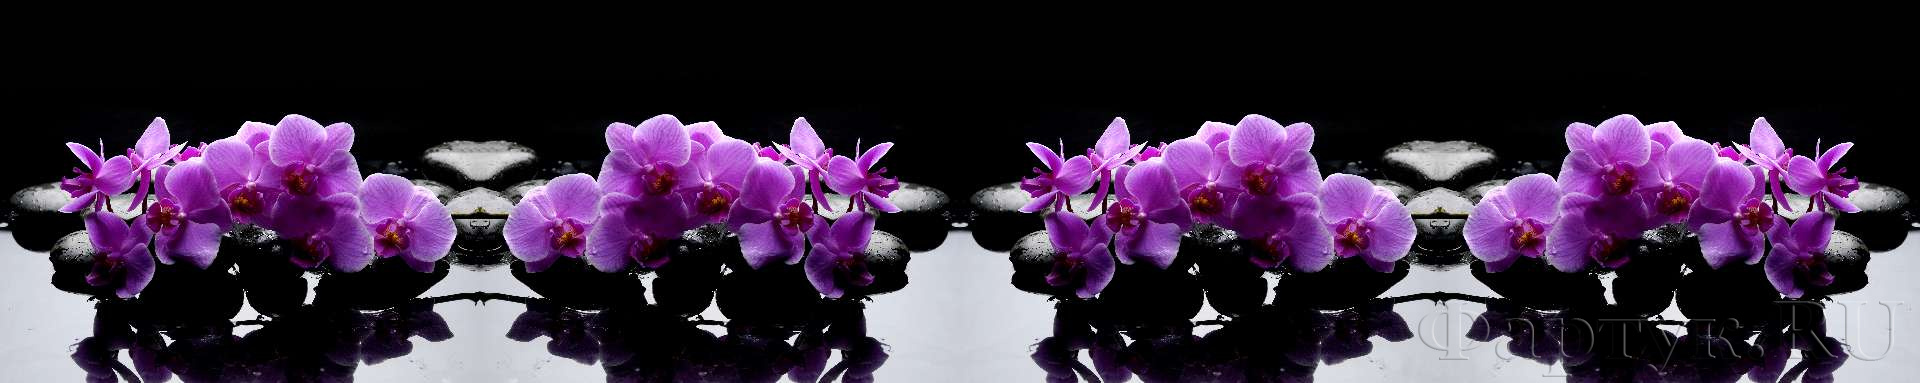 Орхидеи на камнях